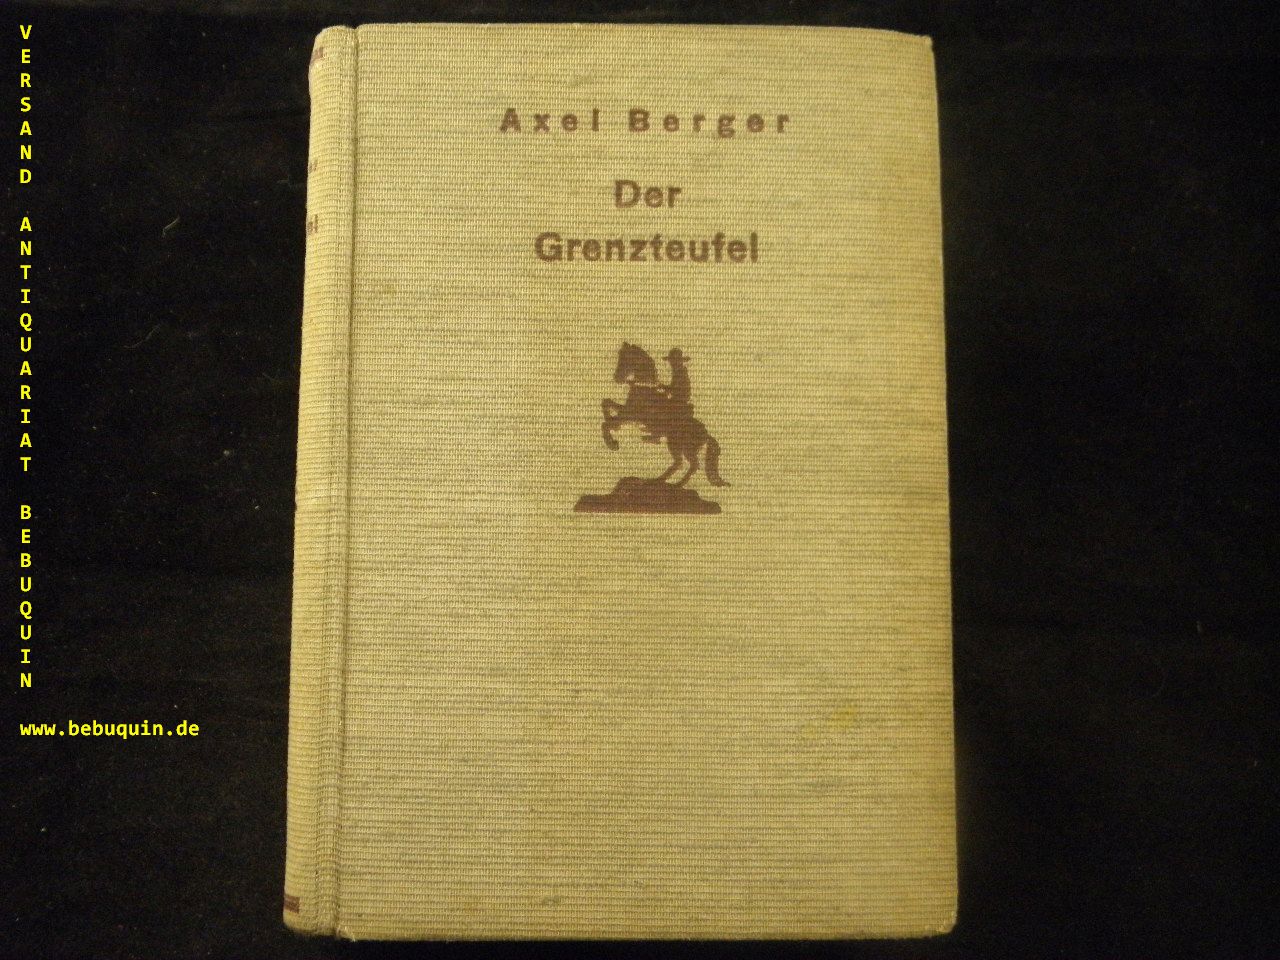 BERGER, Axel: - Der Grenzteufel.